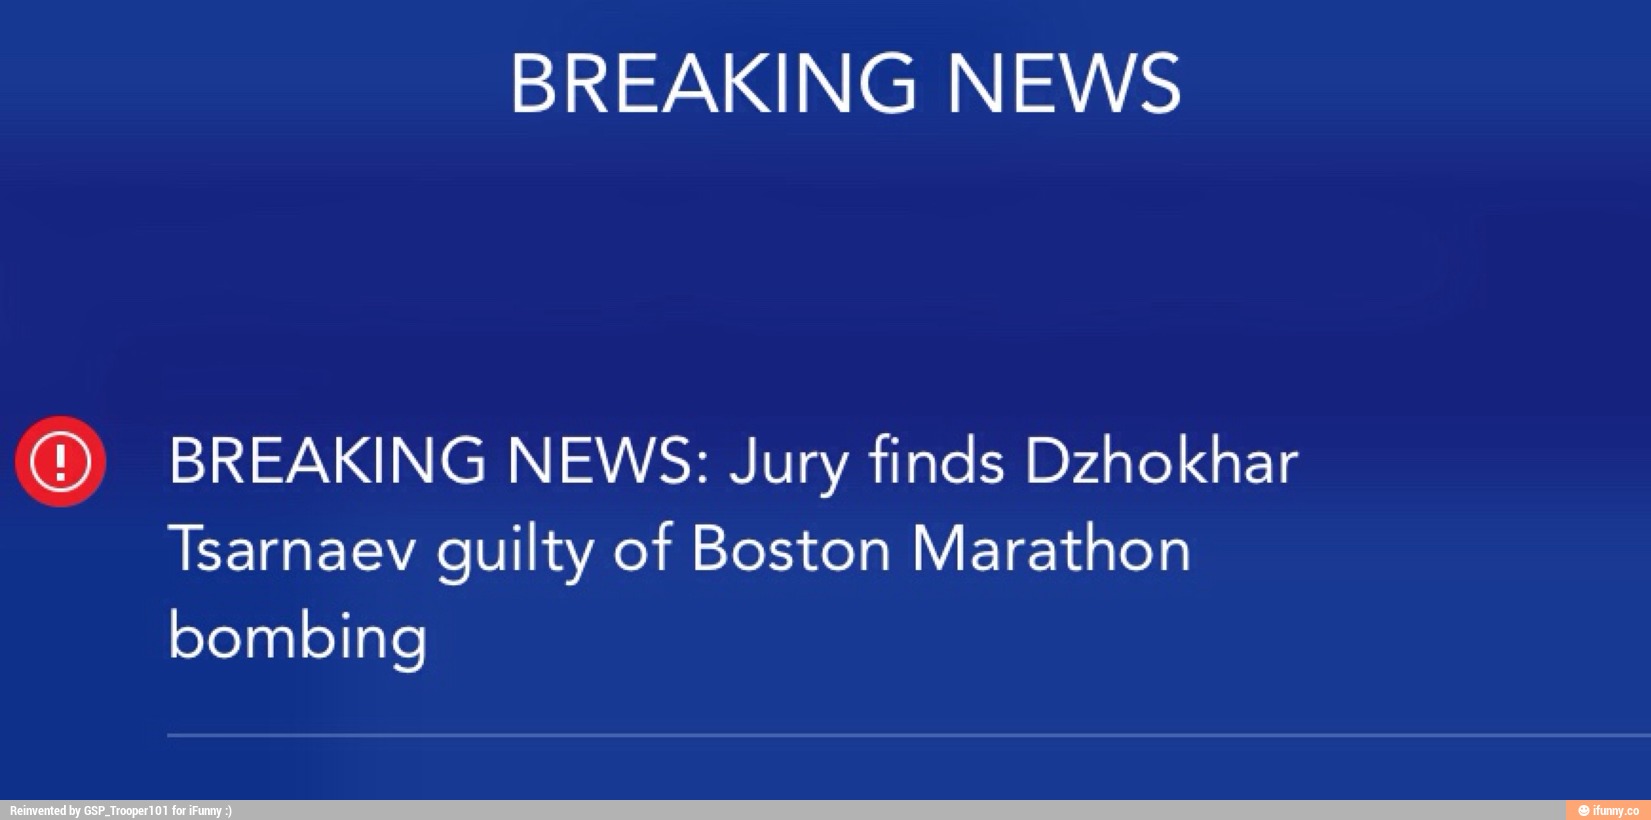 BREAKING NEWS (D BREAKING NEWS Jury finds Dzhokhar Tsarnaev guilty of